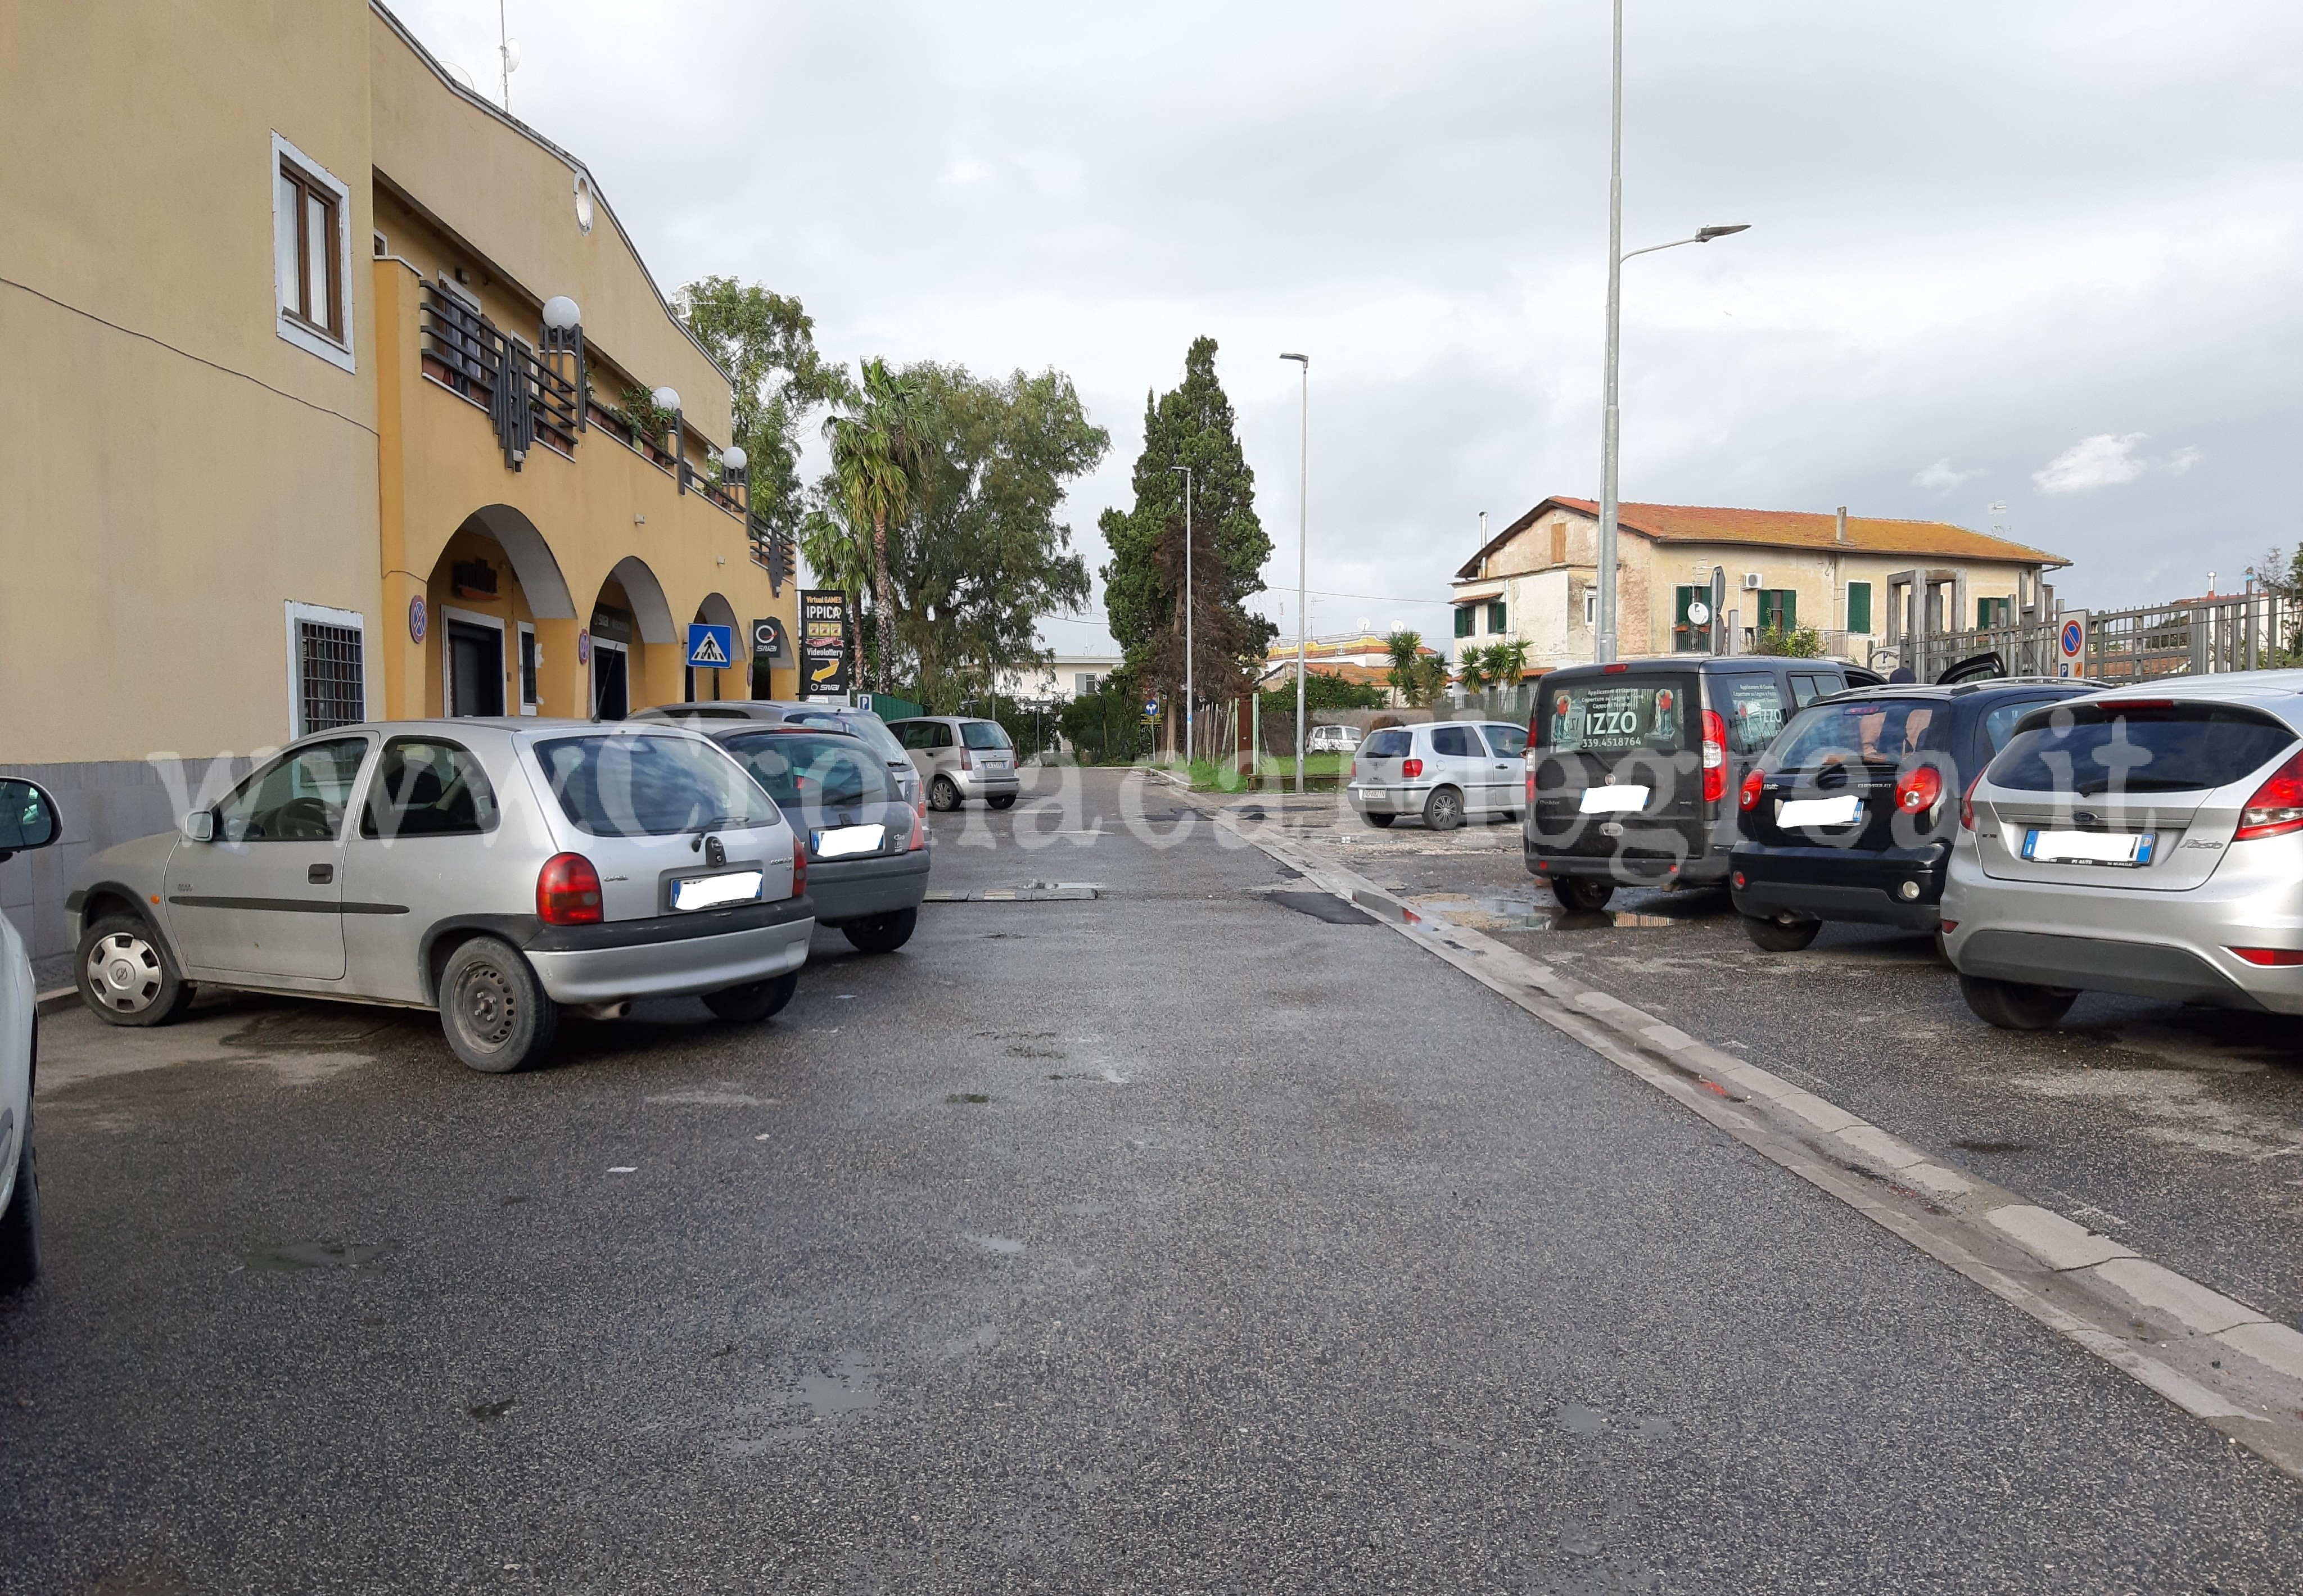 Violenta lite a Licola Borgo: giovane finisce in ospedale con la testa spaccata